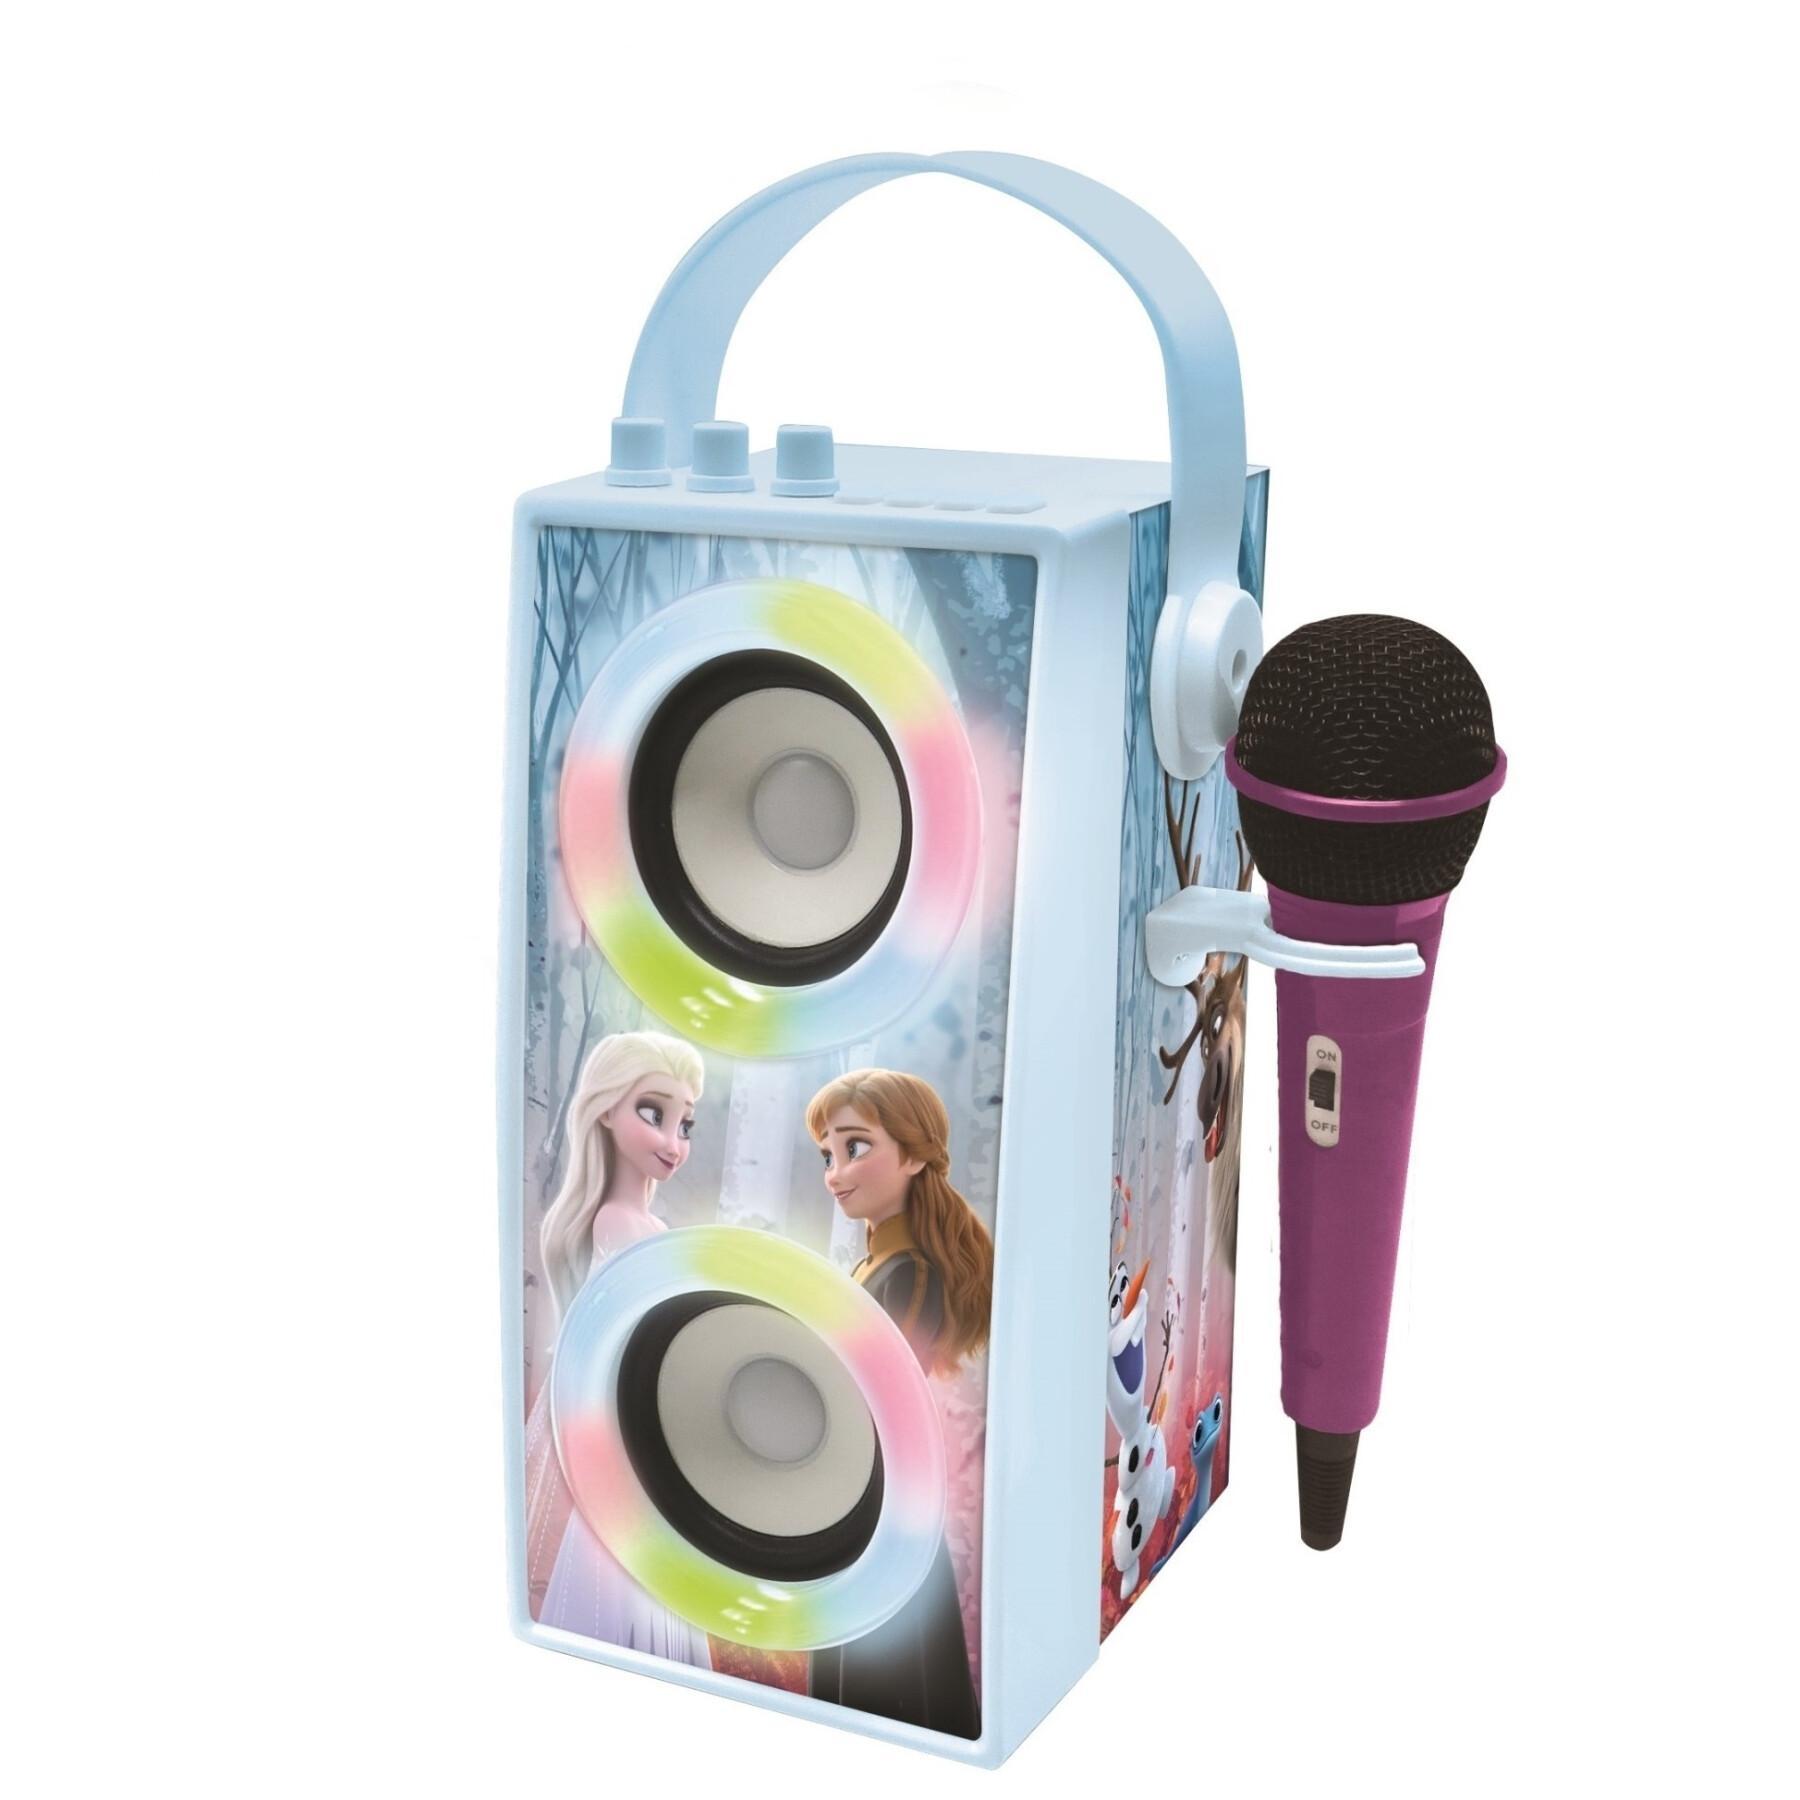 Altoparlante portatile bluetooth® Trendy Snow Queen + microfono ed effetti luminosi Lexibook